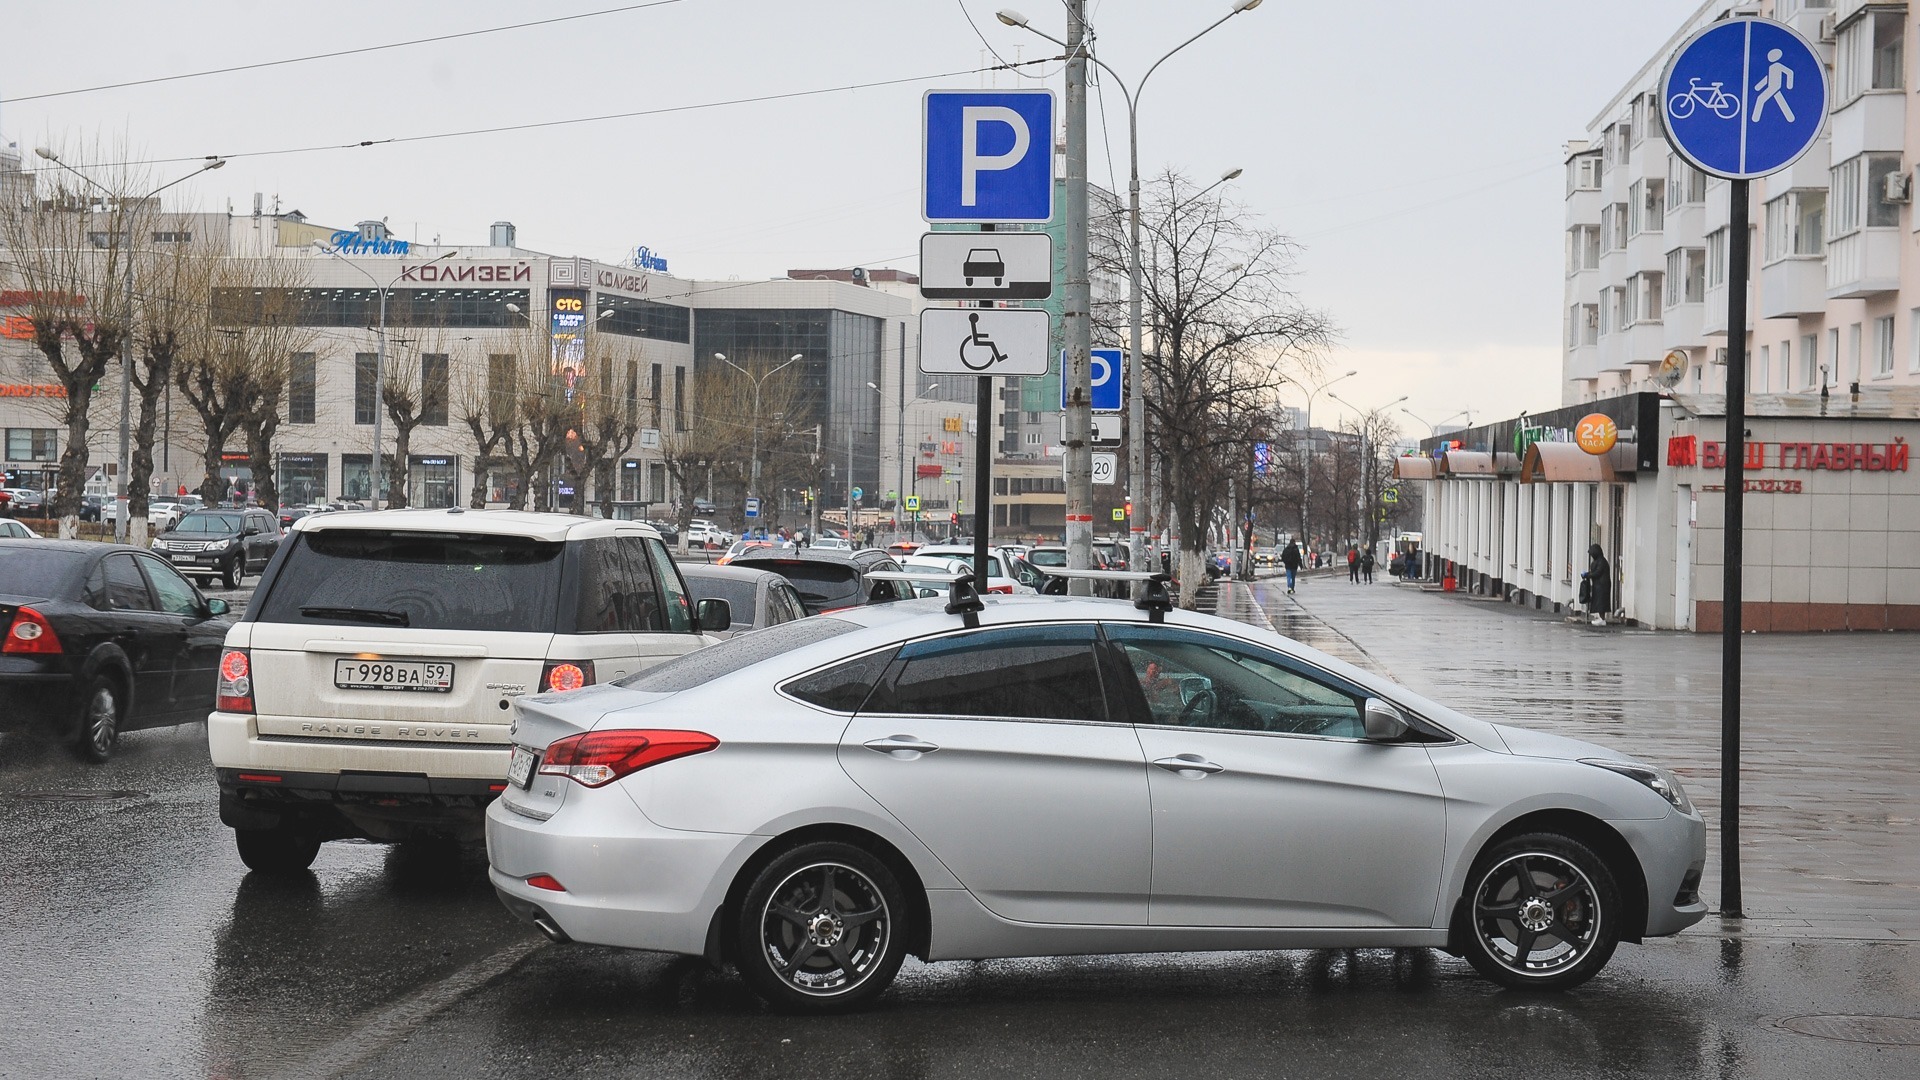 Обоснованность цен на парковку во Владивостоке проверит УФАС